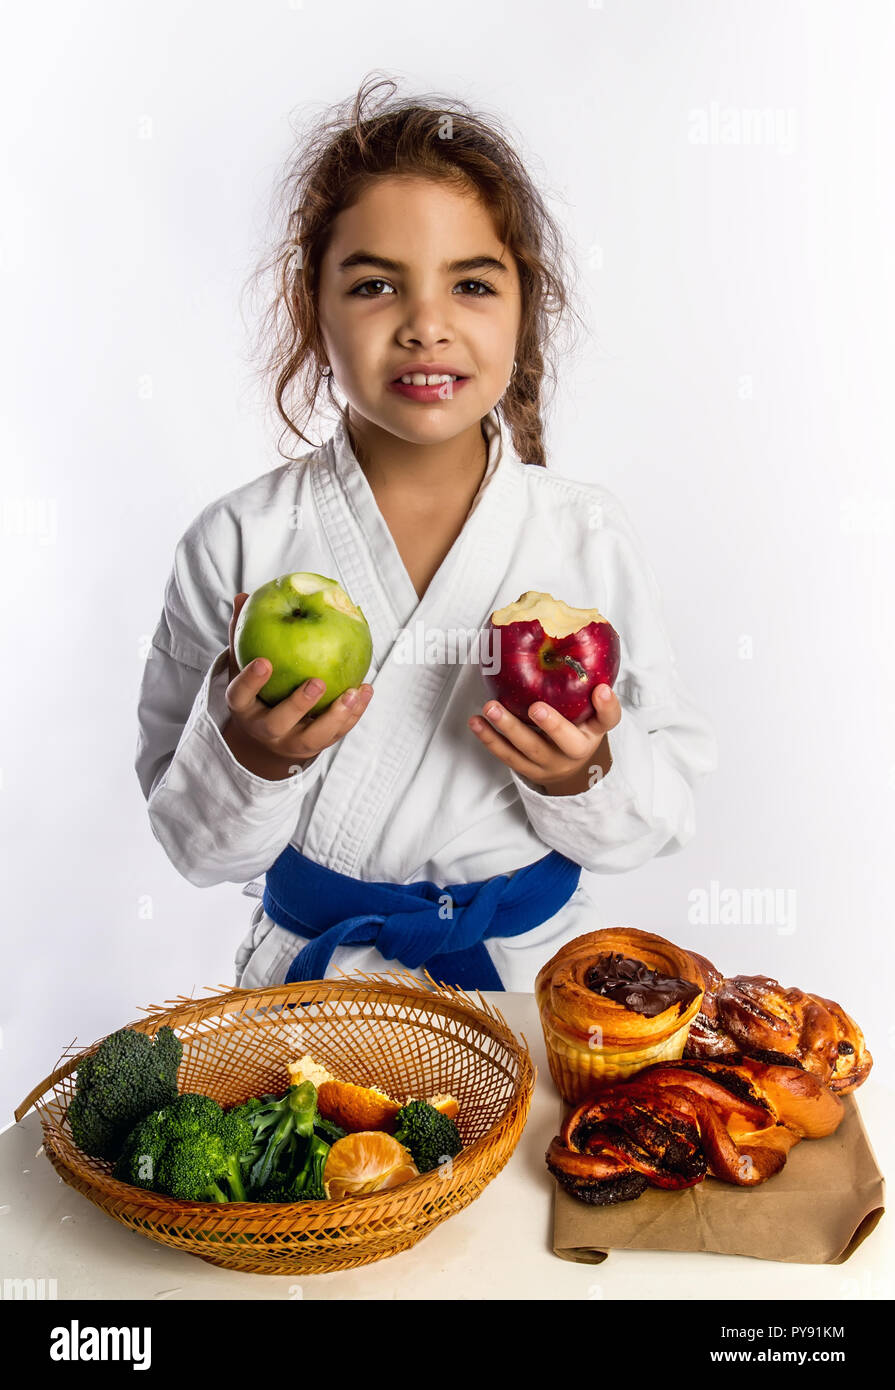 Ein kleines Mädchen in Karate uniform und eine Blue Belt wählte Äpfel anstelle von Brötchen essen. Stockfoto